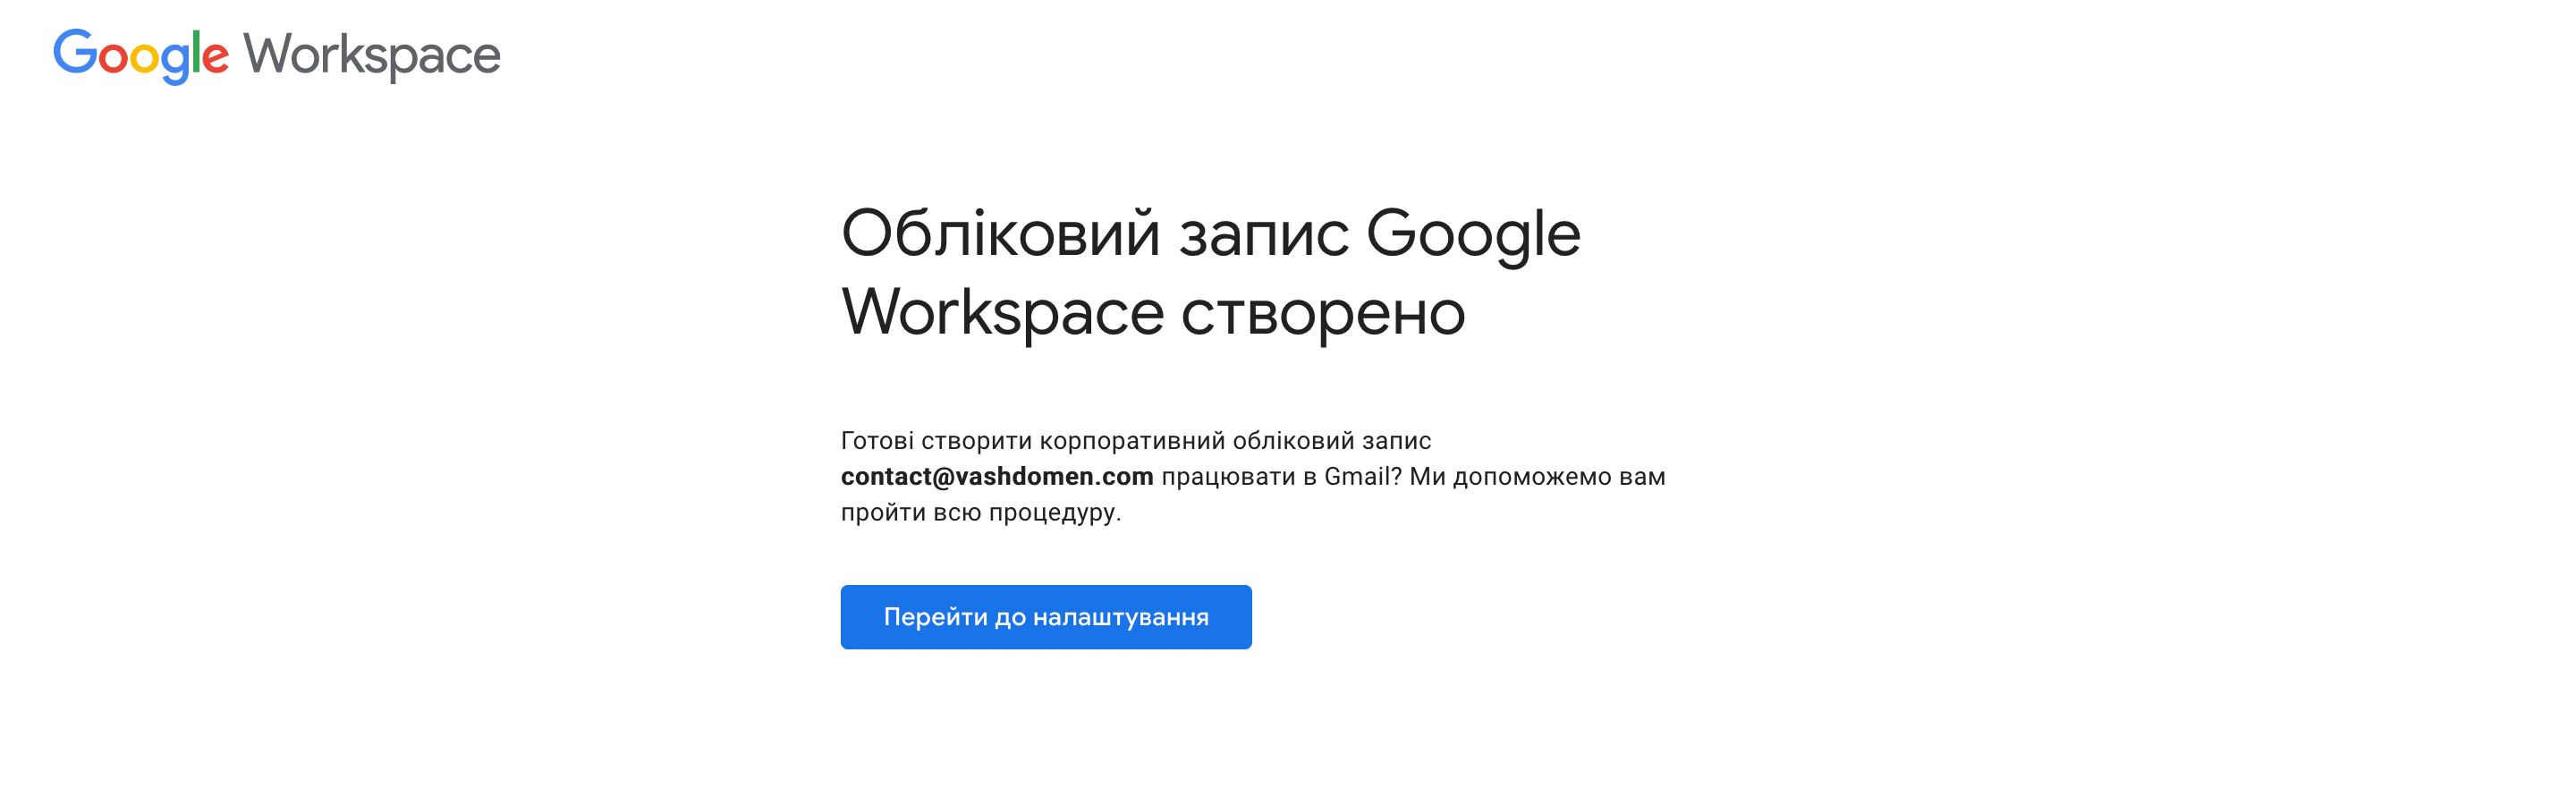 Створення пошти на своєму домені — завершення реєстрації на сервісі Google Workspace